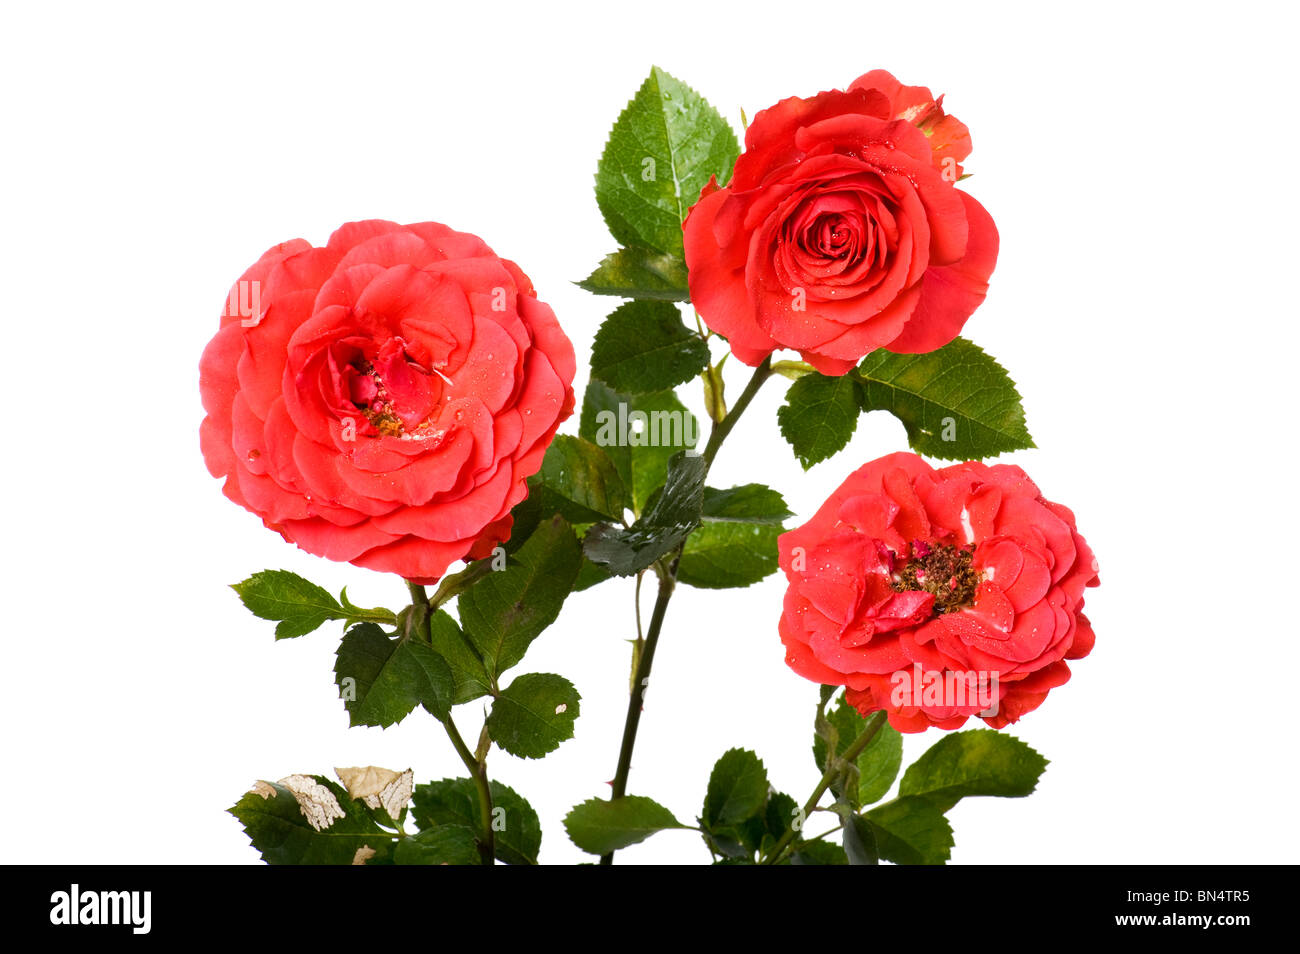 Objekt auf weiß - Blumen rose Nahaufnahme Stockfoto